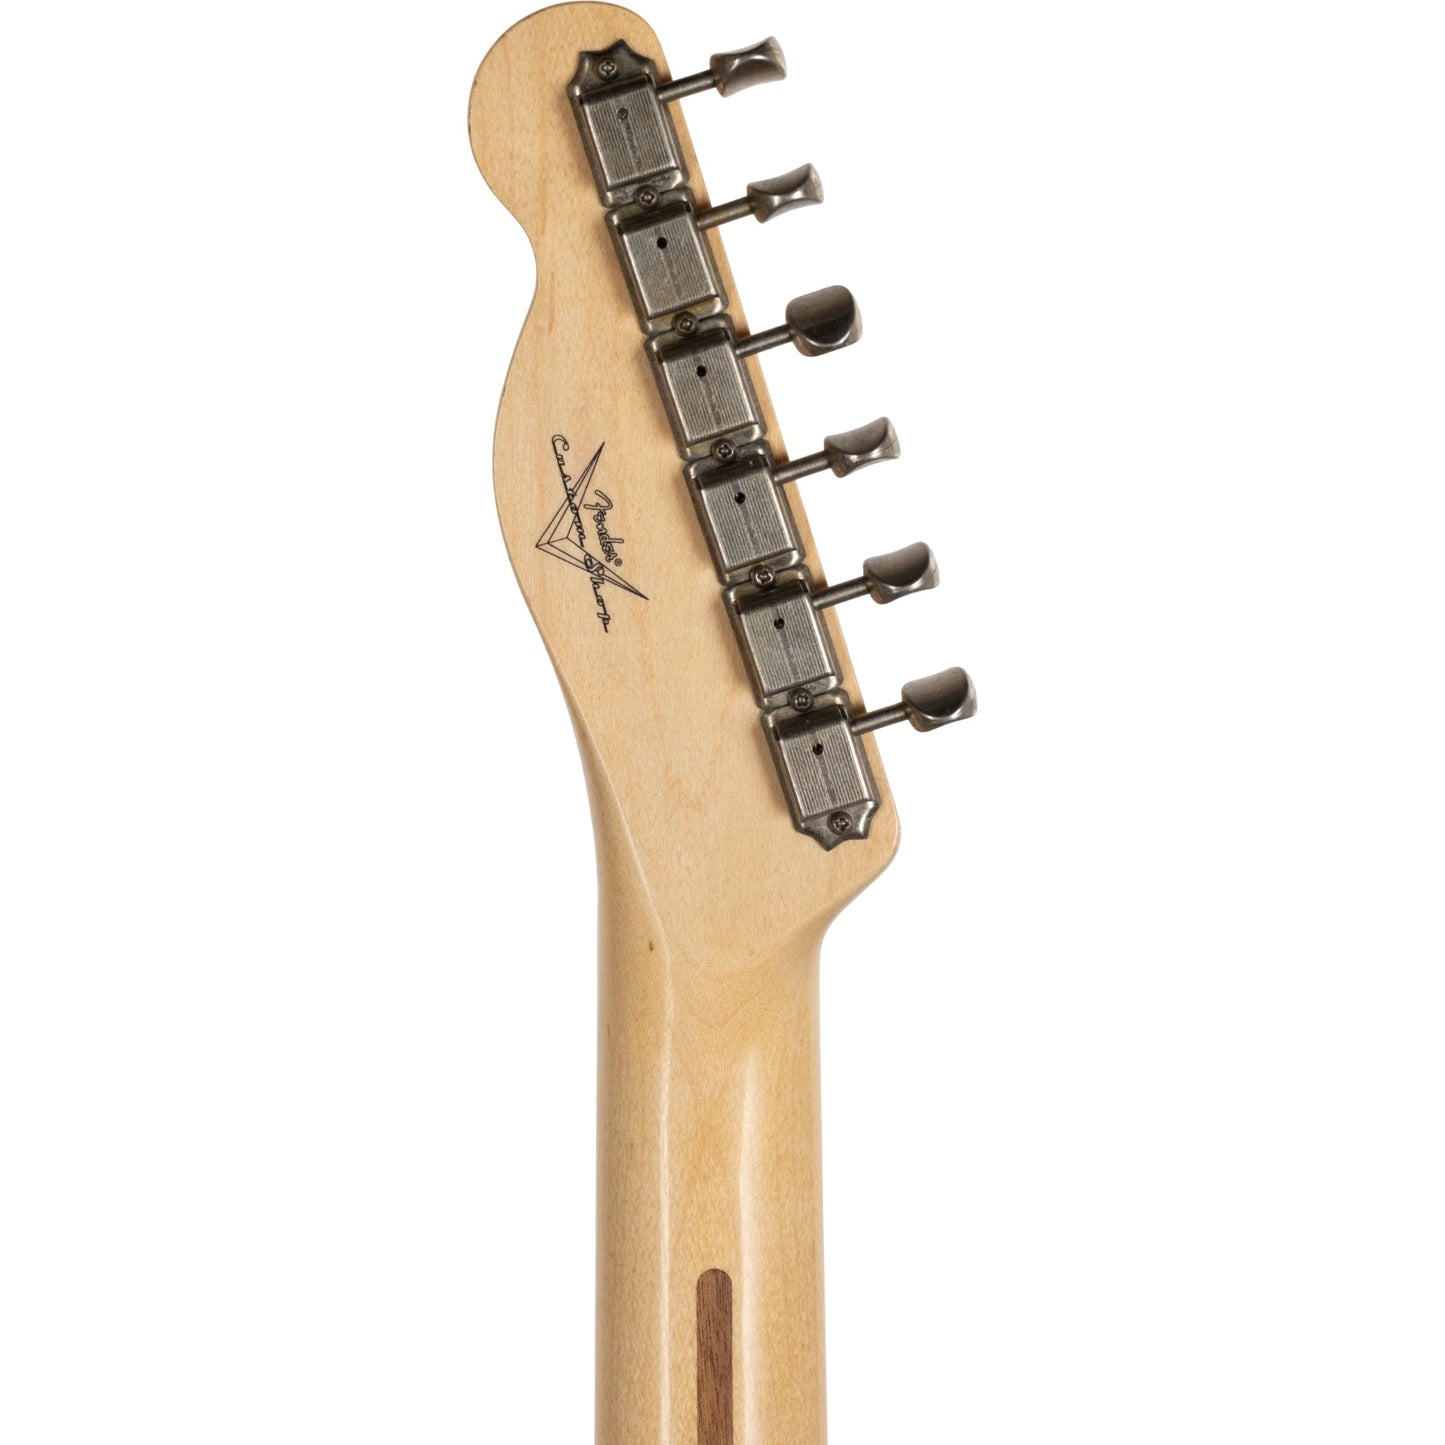 Fender Custom Shop 60s Telecaster® Relic, Burgundy Mist Metallic